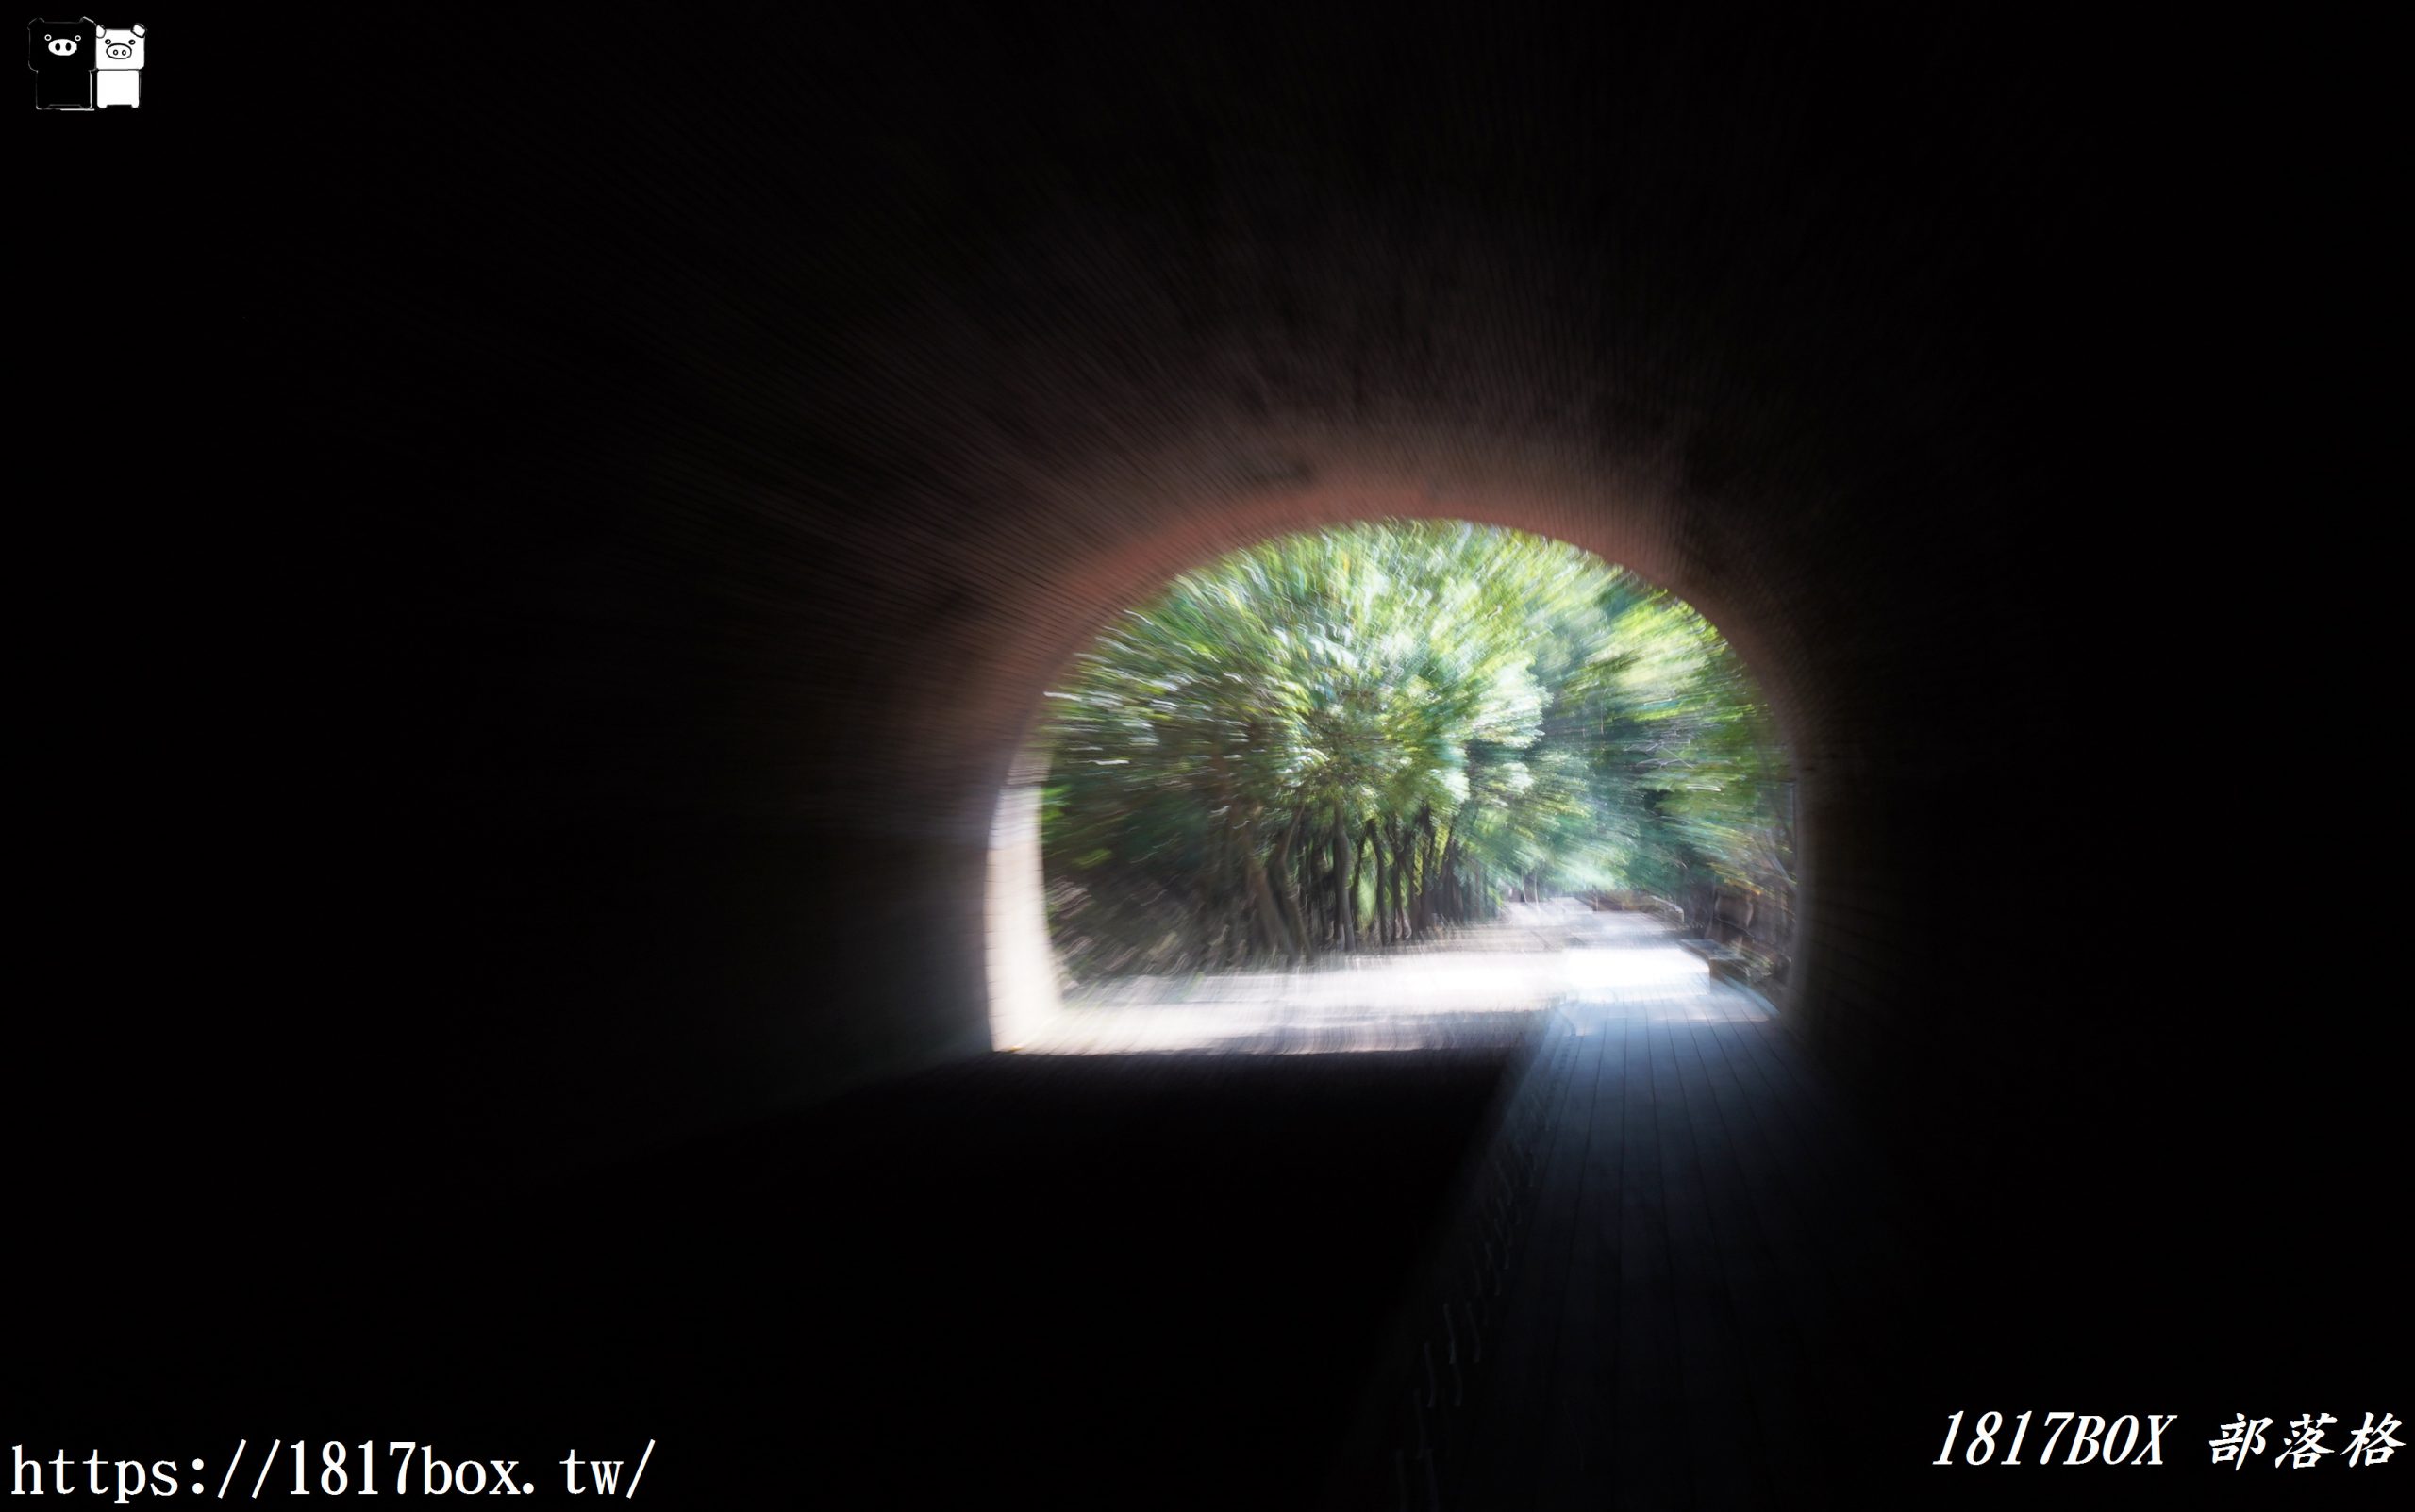 【苗栗。竹南】崎頂子母隧道。苗栗唯一的鐵路雙線子母舊隧道。日系動漫神隱少女場景